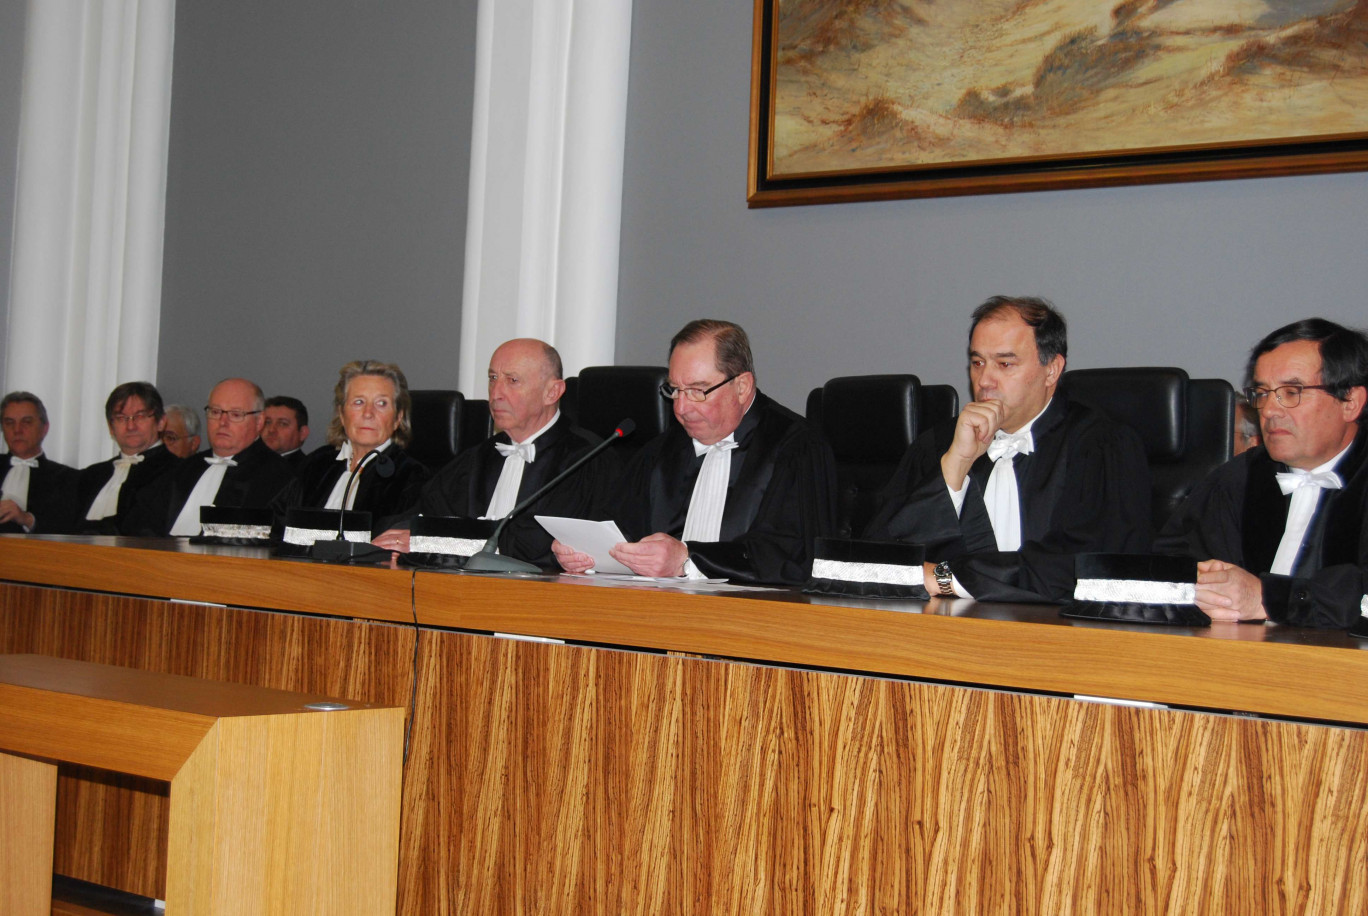 Daniel Lefebvre, entouré des présidents de chambre du Tribunal de commerce de Boulogne, a présidé sa première audience solennelle de rentrée.